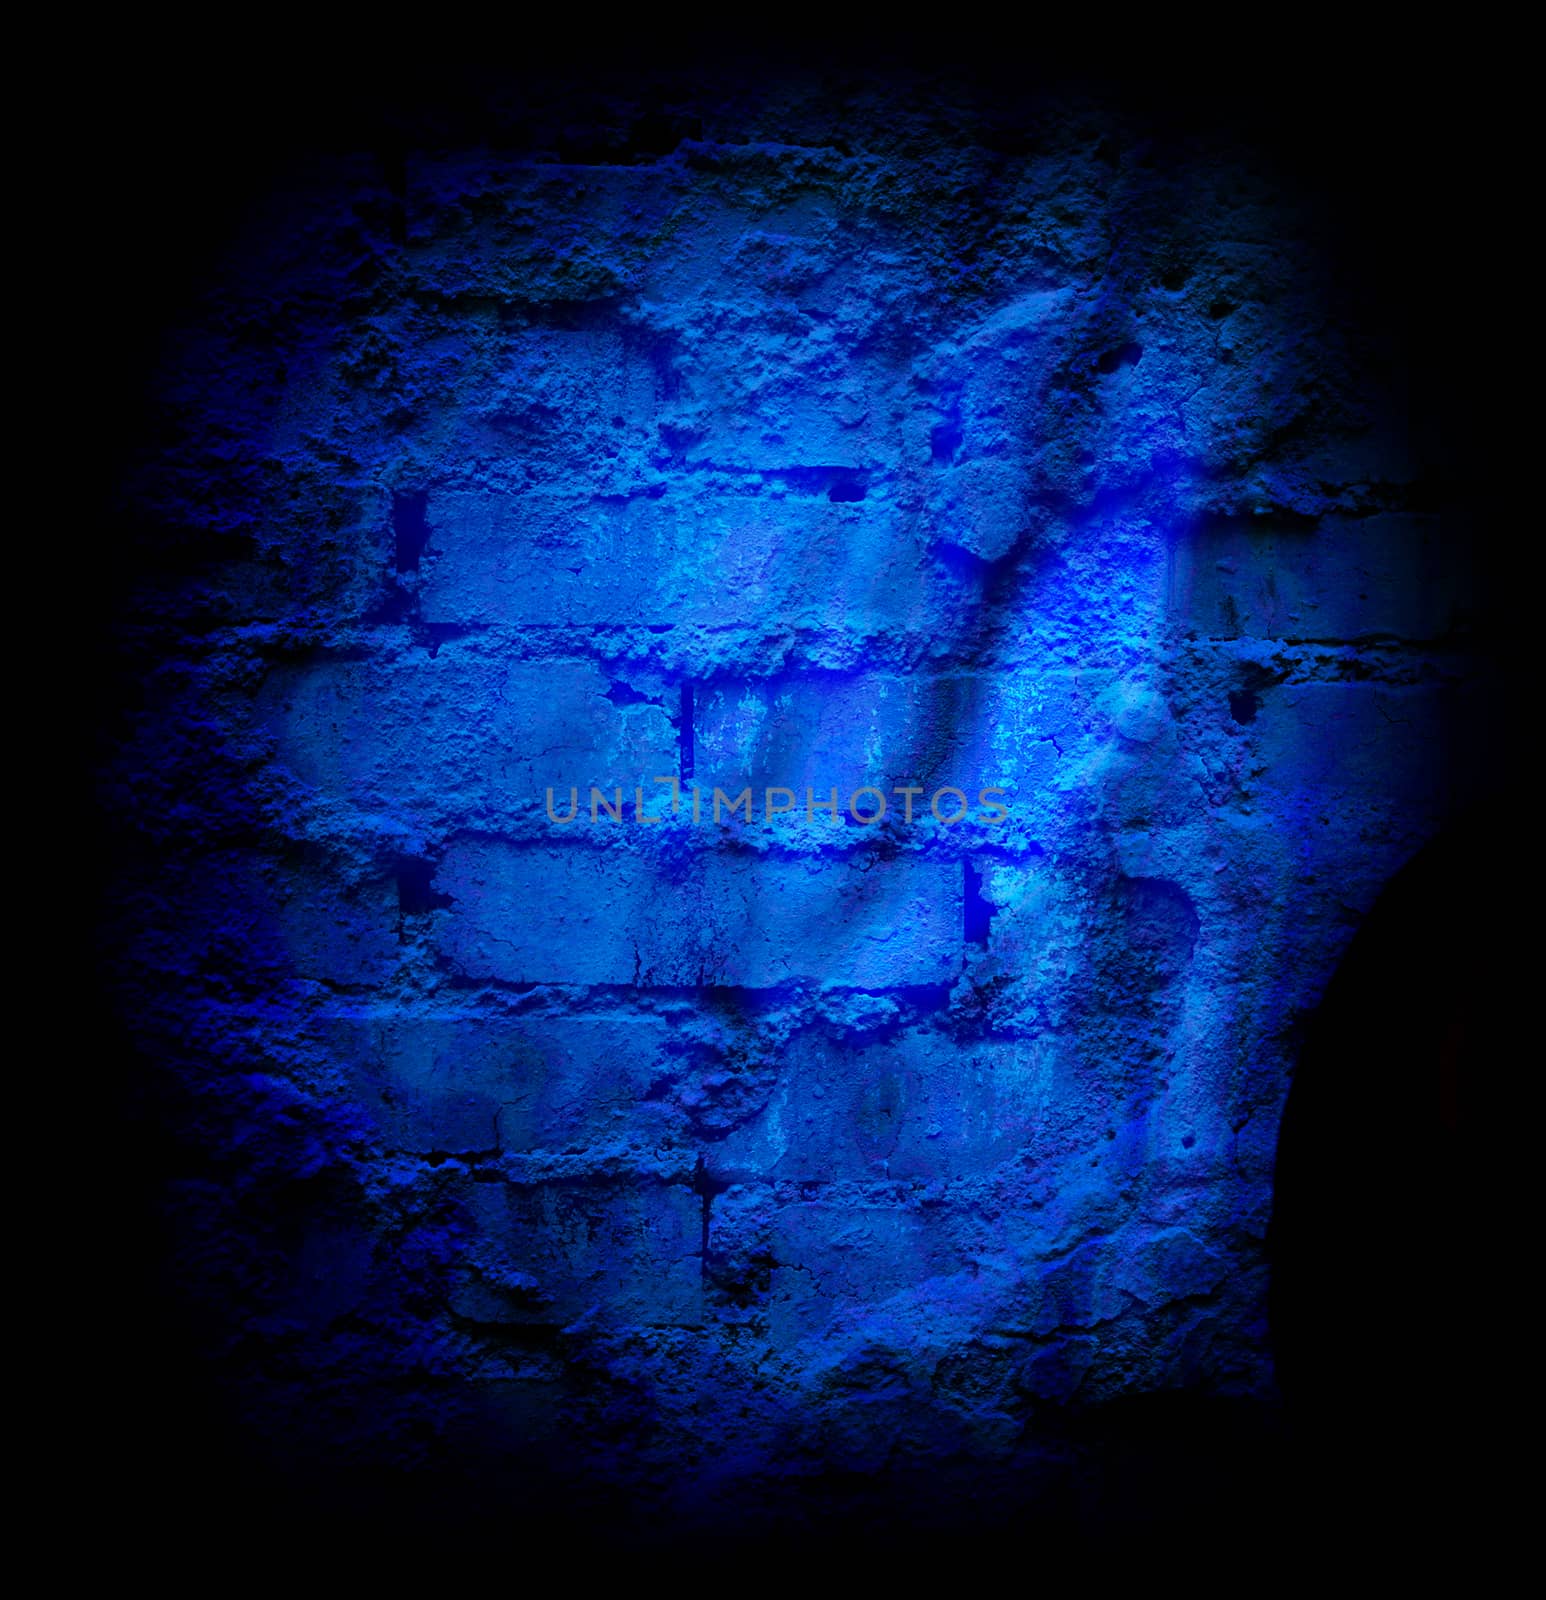 Blue brick stone wall by Garsya